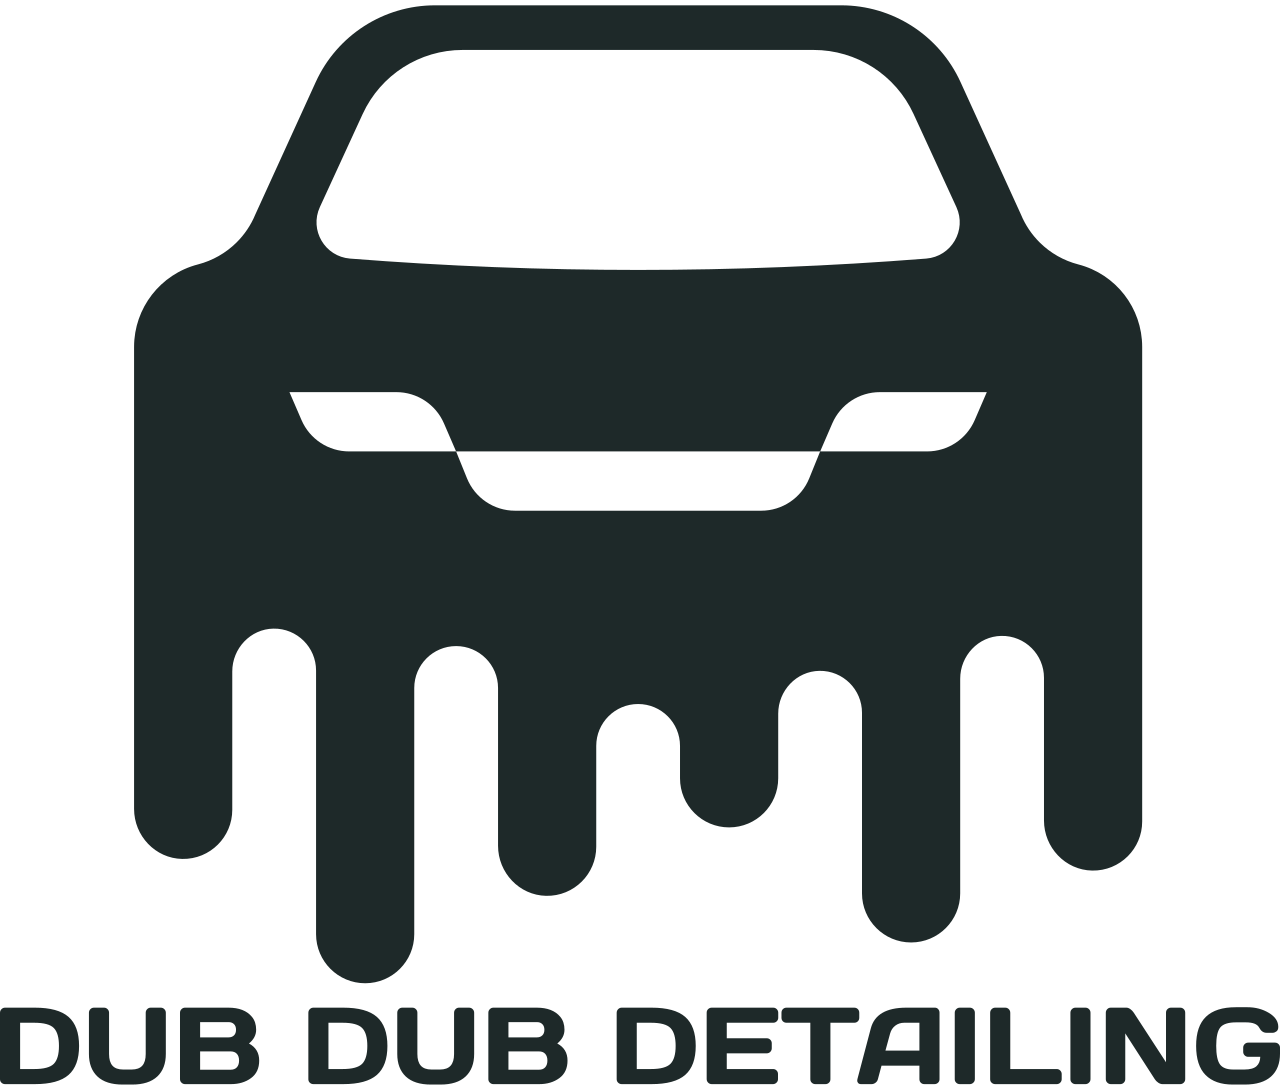 DUB DUB DETAILING's web page